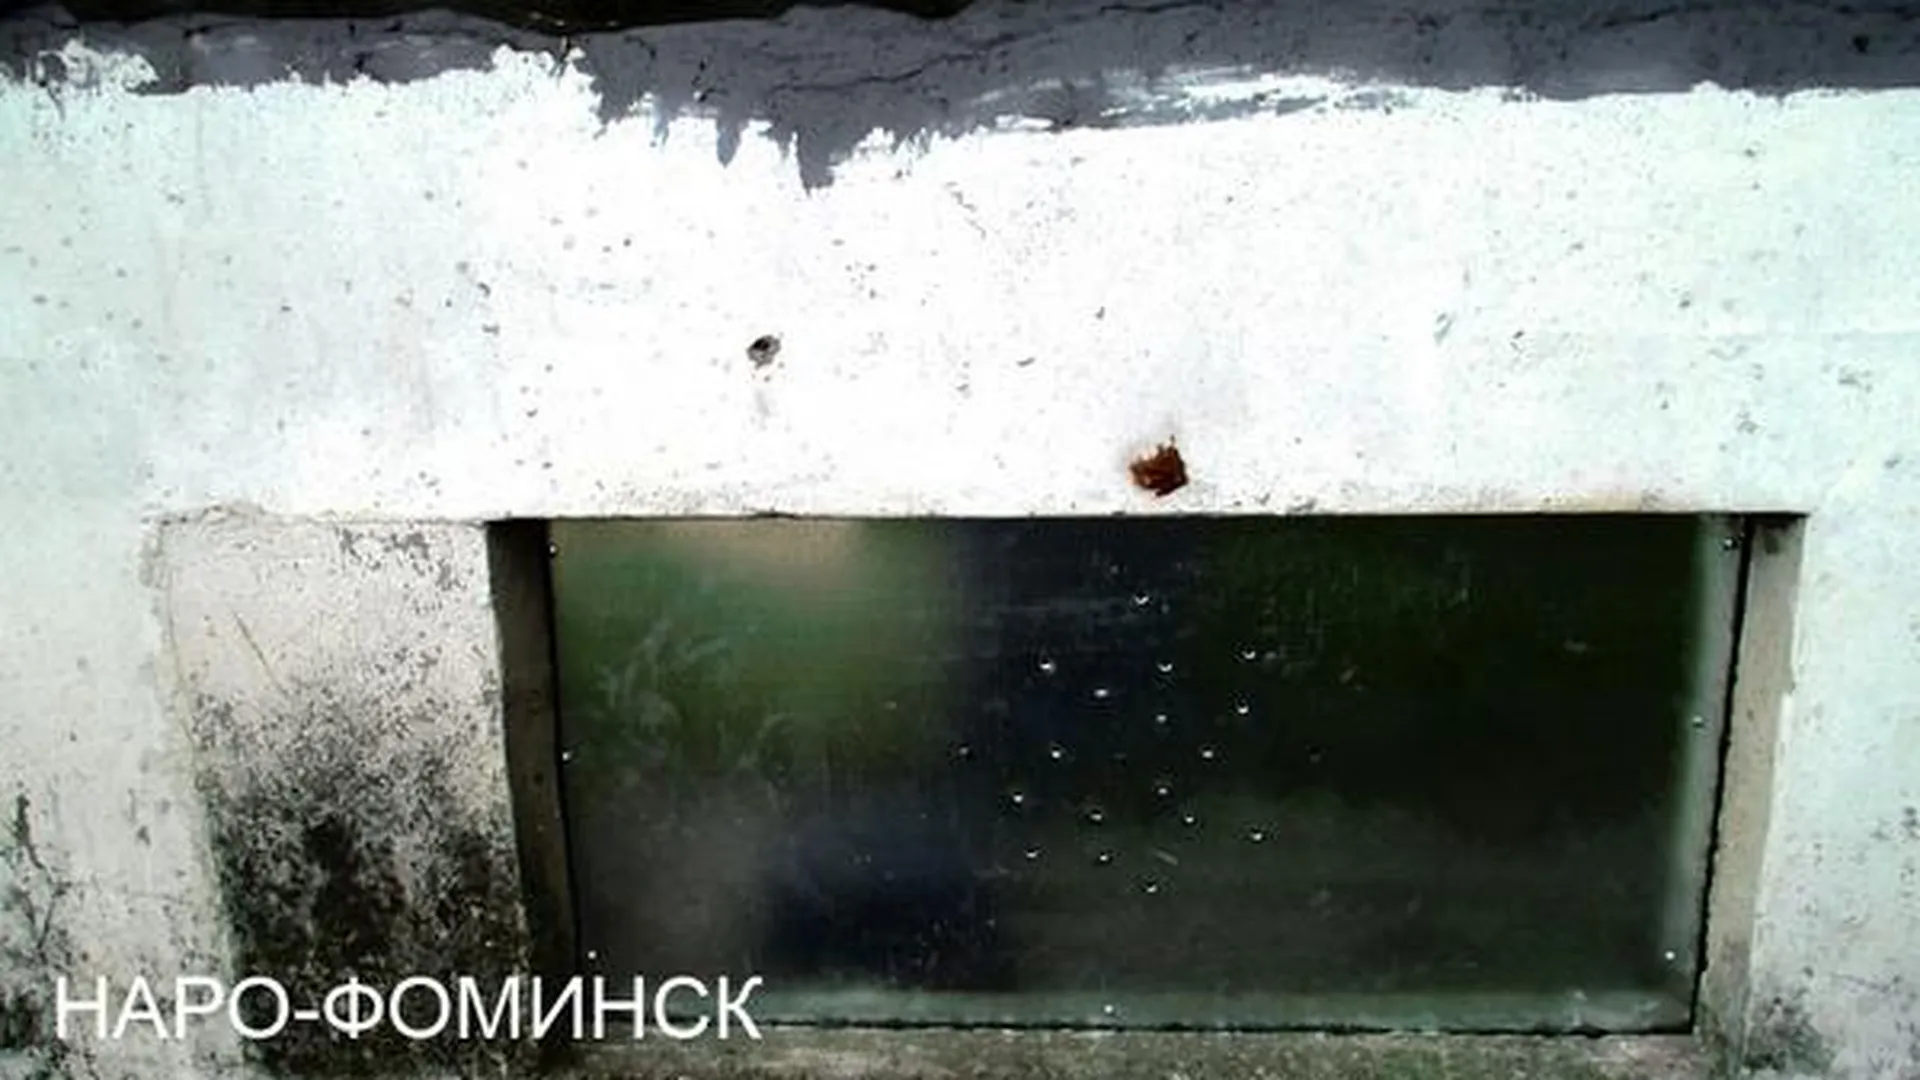 УК в Наро-Фоминске подготовила дома к зиме только после штрафа в 380 тыс